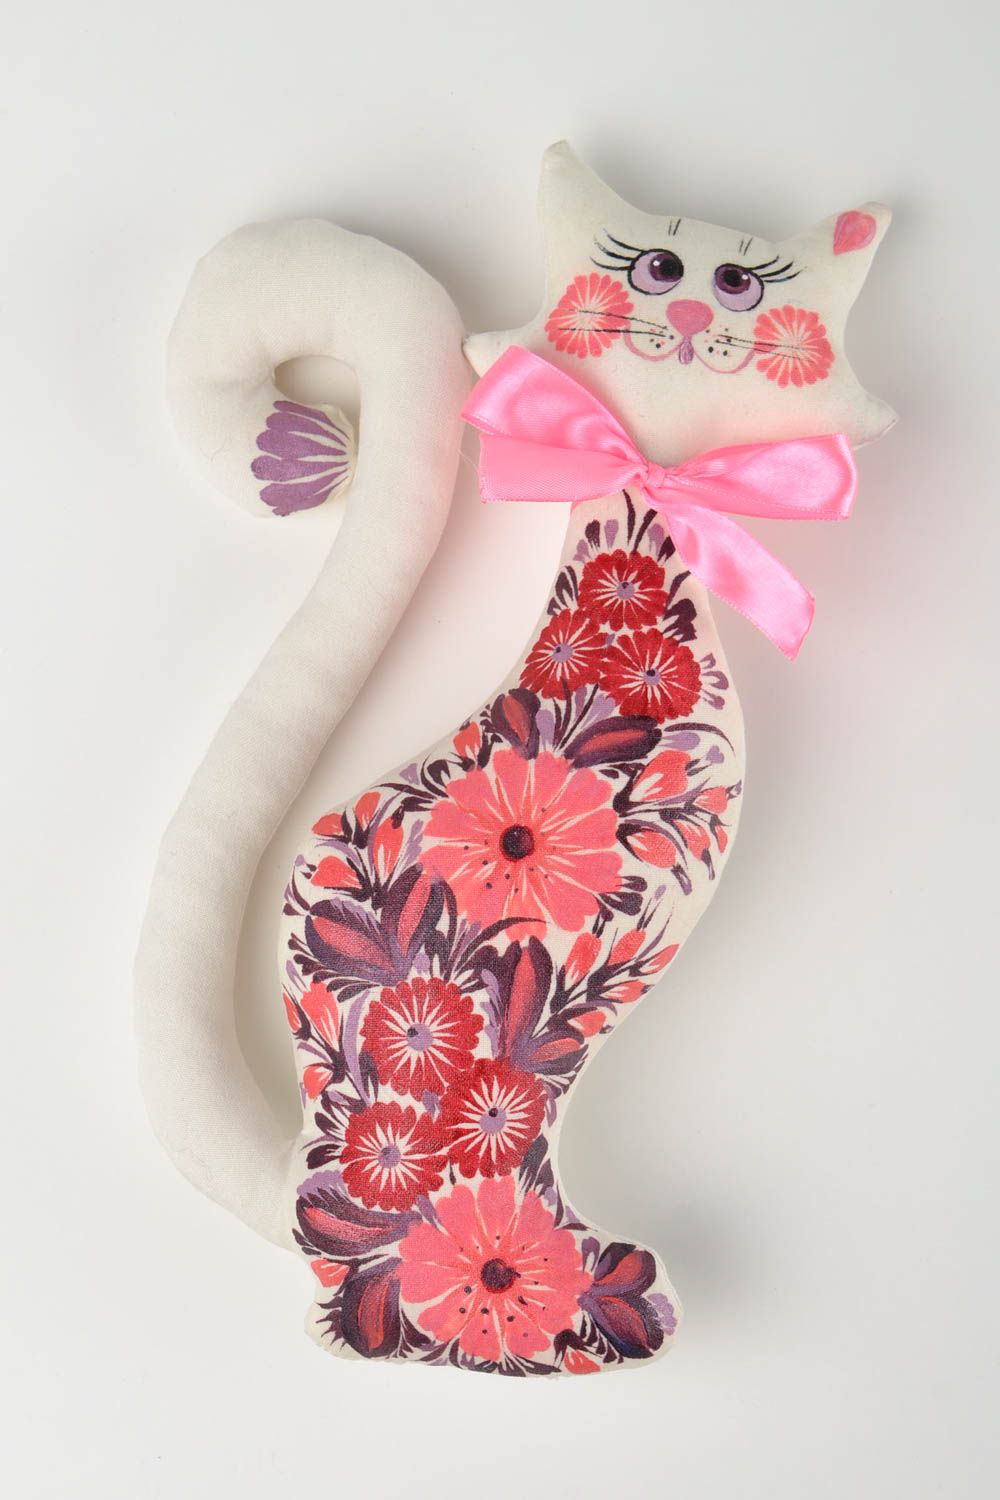 Игрушка кошка игрушка ручной работы интересный подарок Белая кошка в цветы фото 1